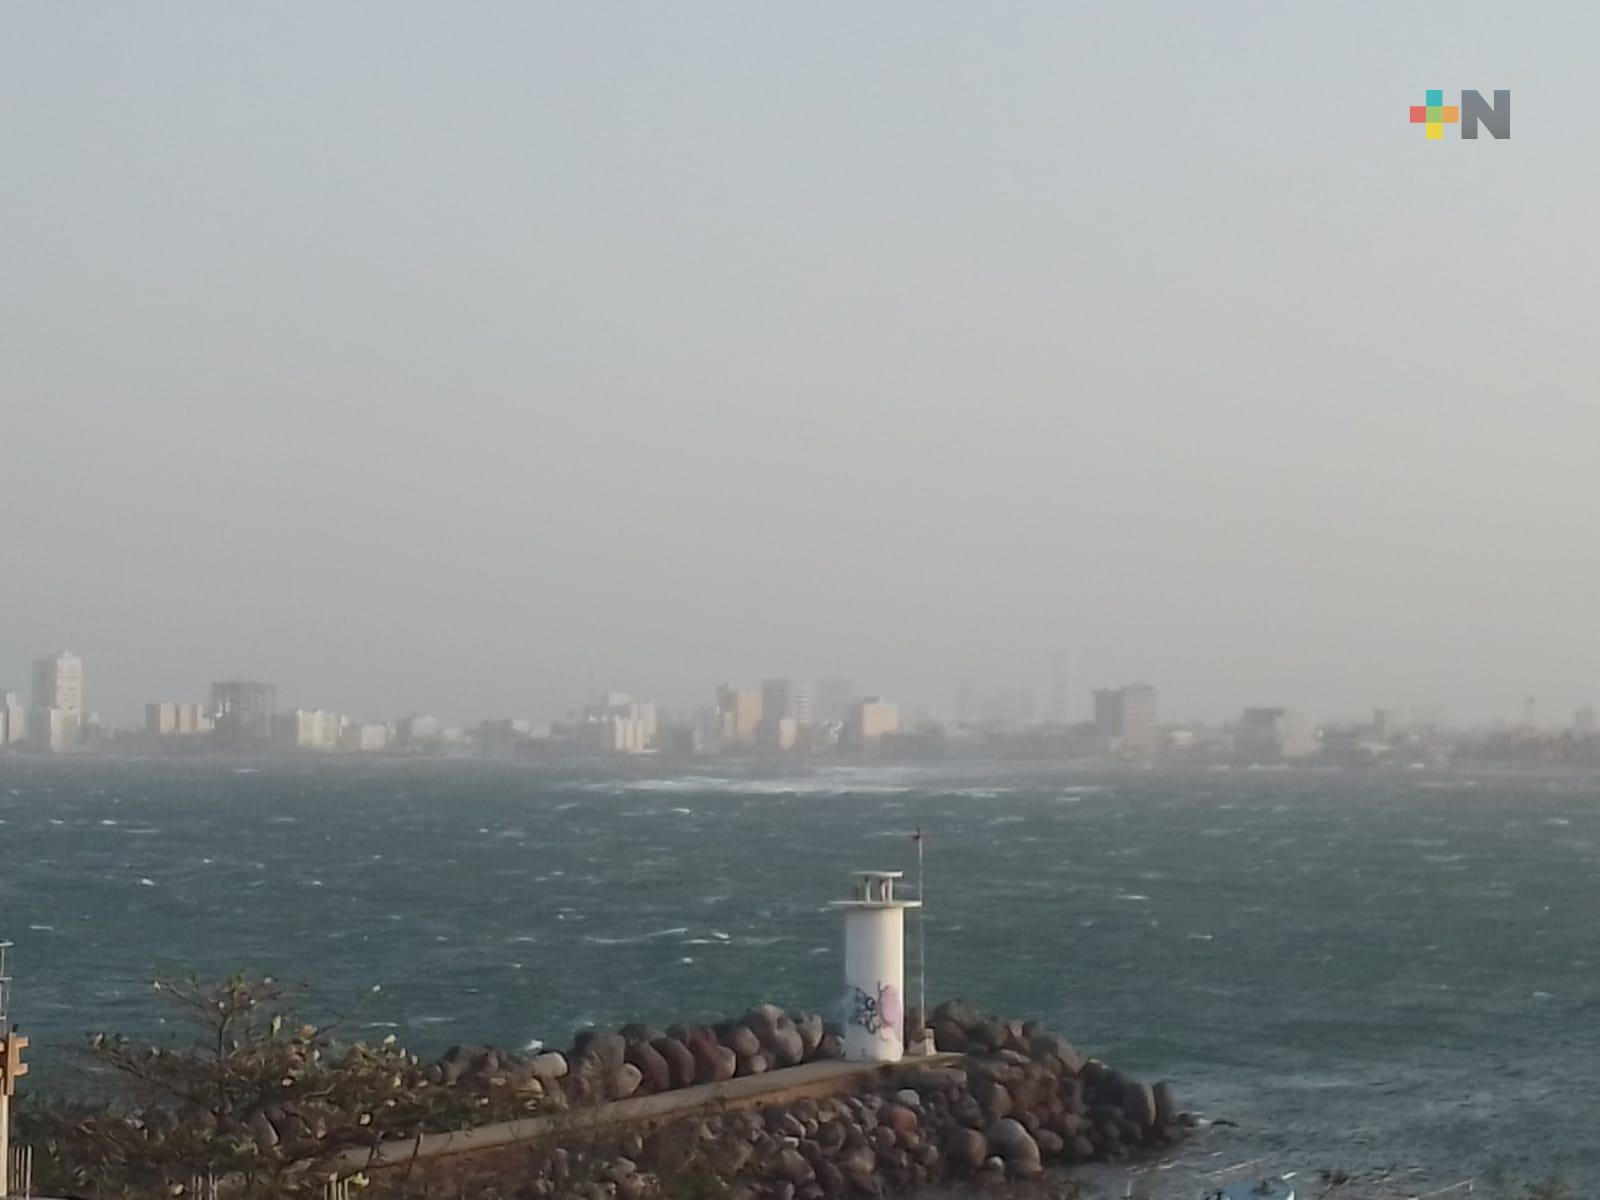 Rachas de viento incrementaron con rapidez en Veracruz puerto